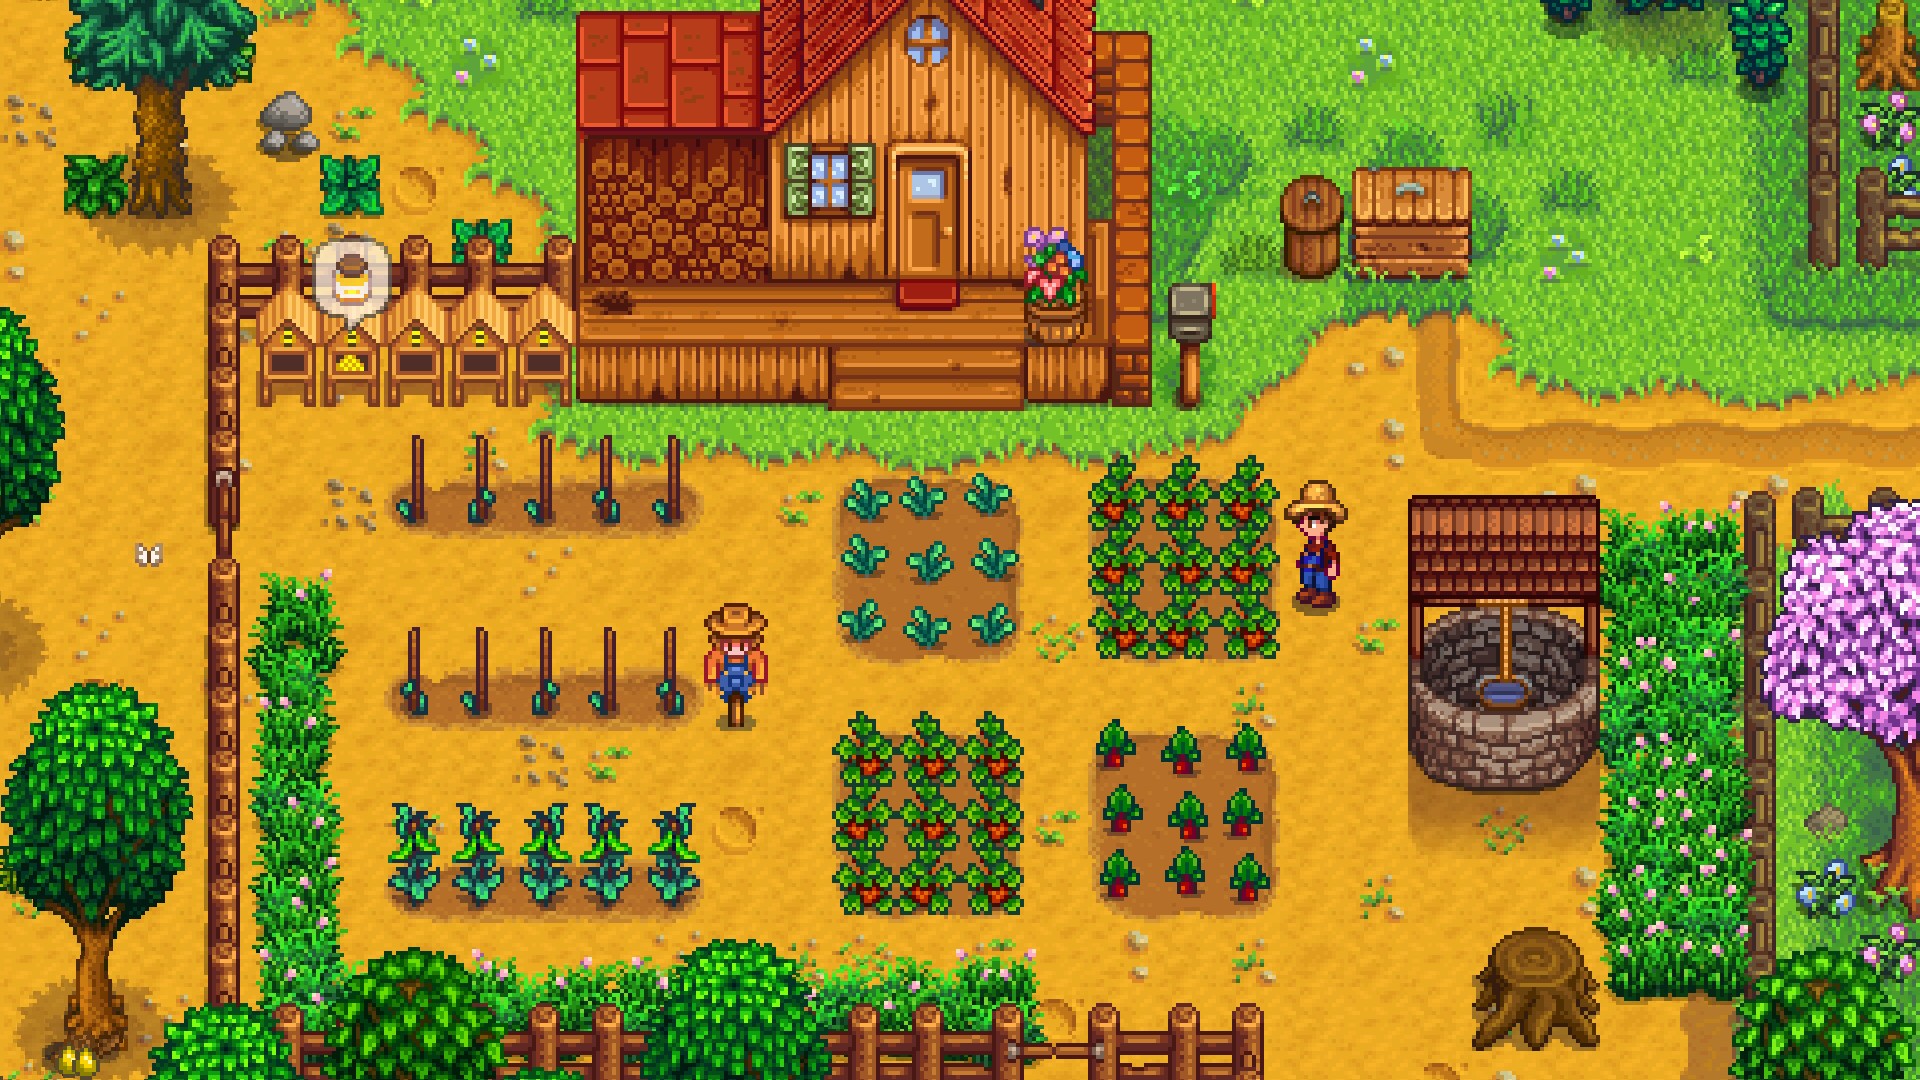 FARMING SIMULATOR 23 - Novo Jogo de Fazenda para Android e iOS 